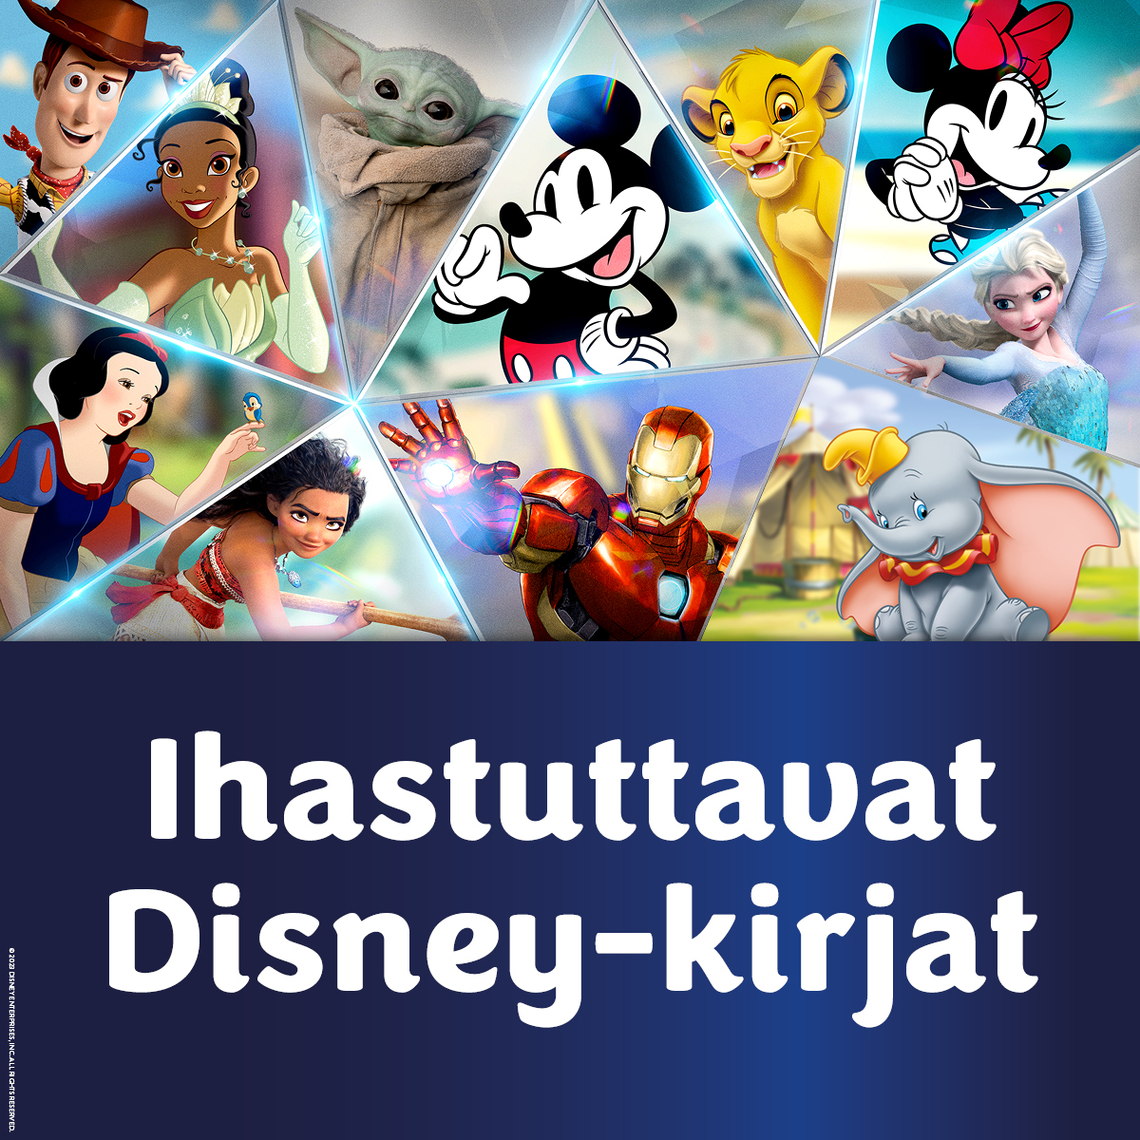 Disney-kirjat